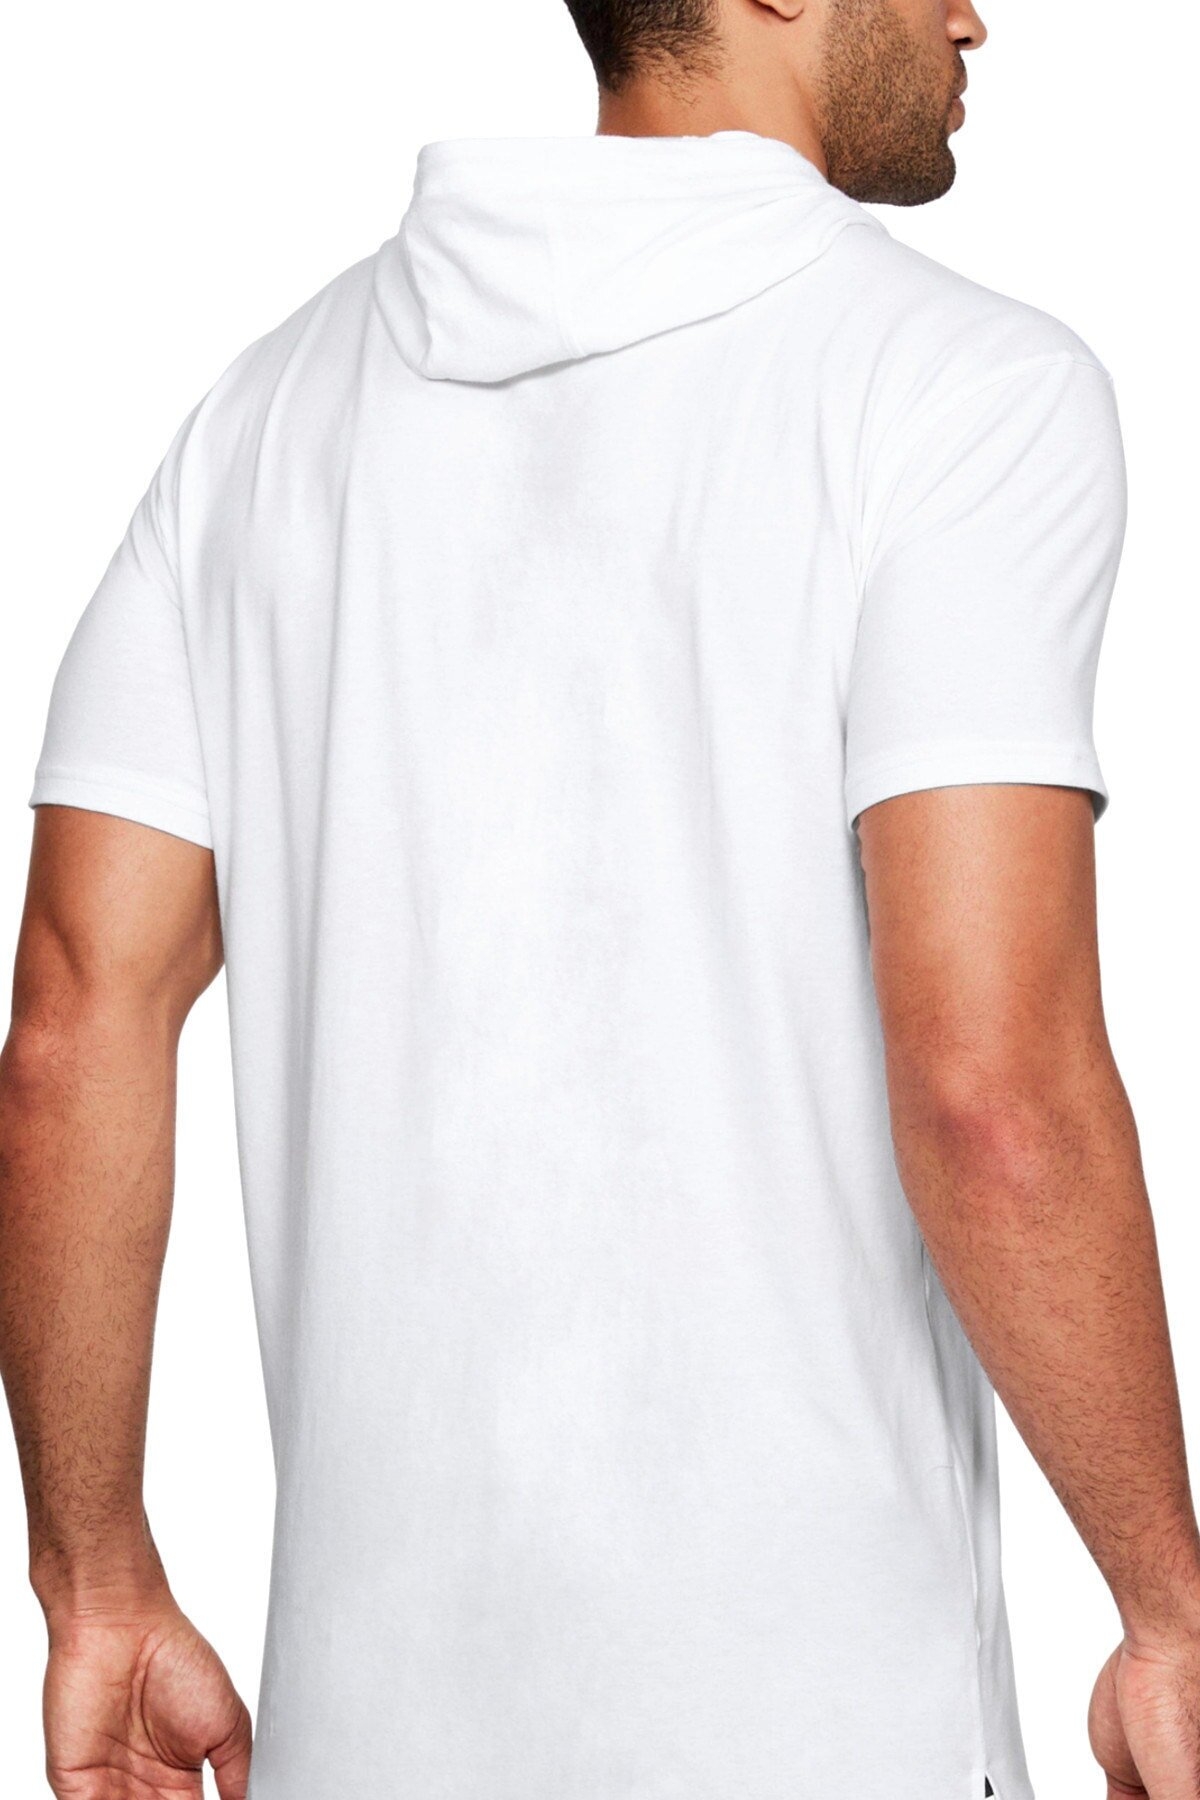 Hayata Gülümse Beyaz Kapşonlu Kısa Kollu Erkek T-shirt